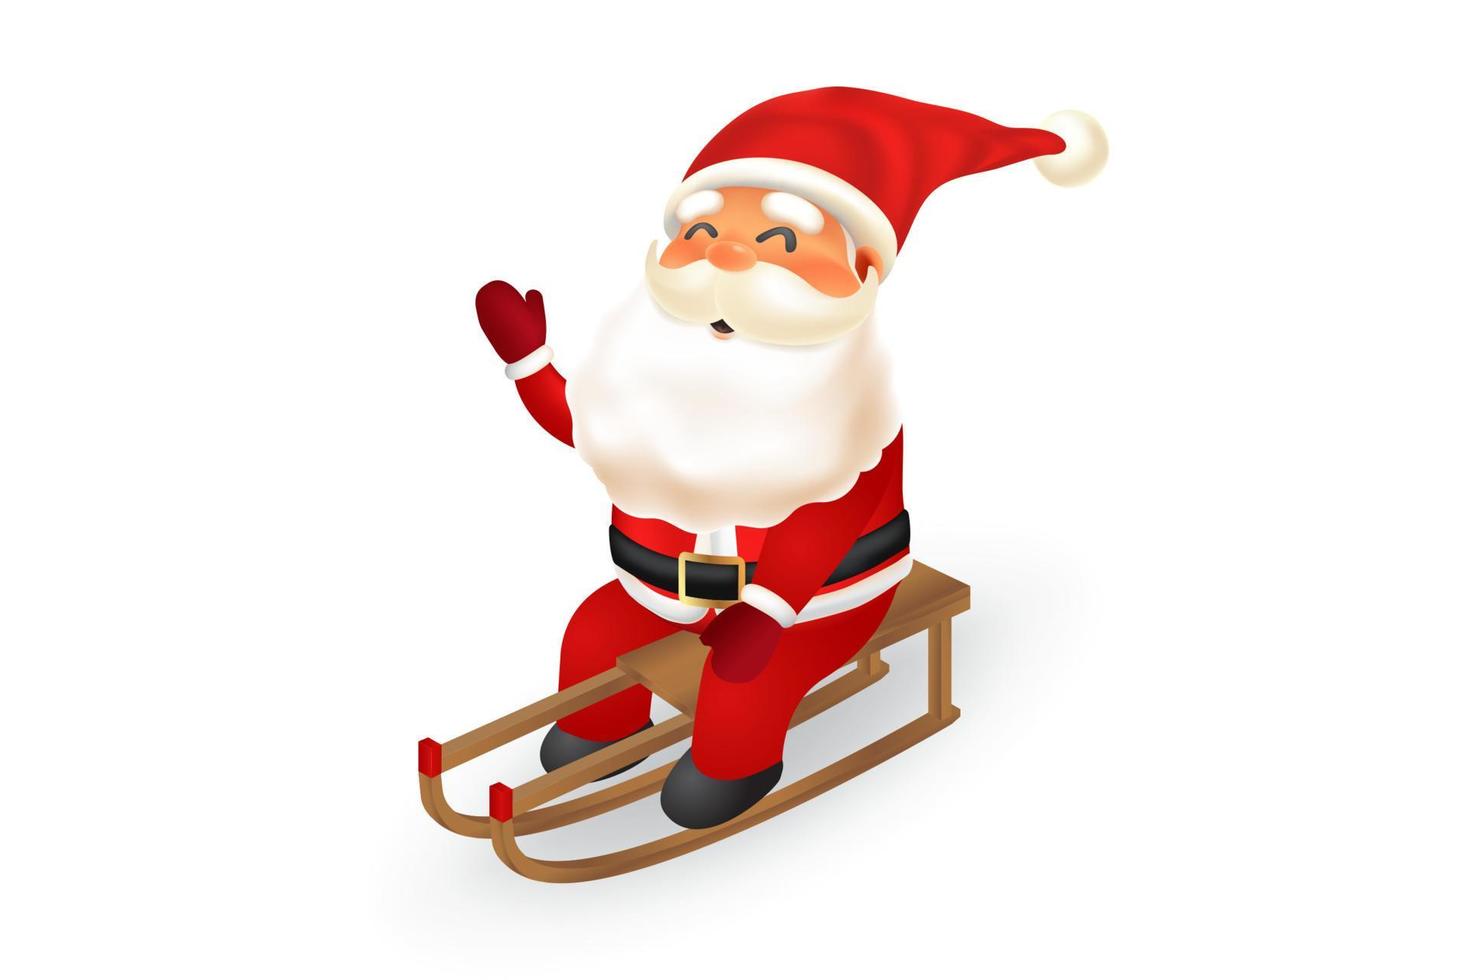 Santa Claus 3D illustration vector